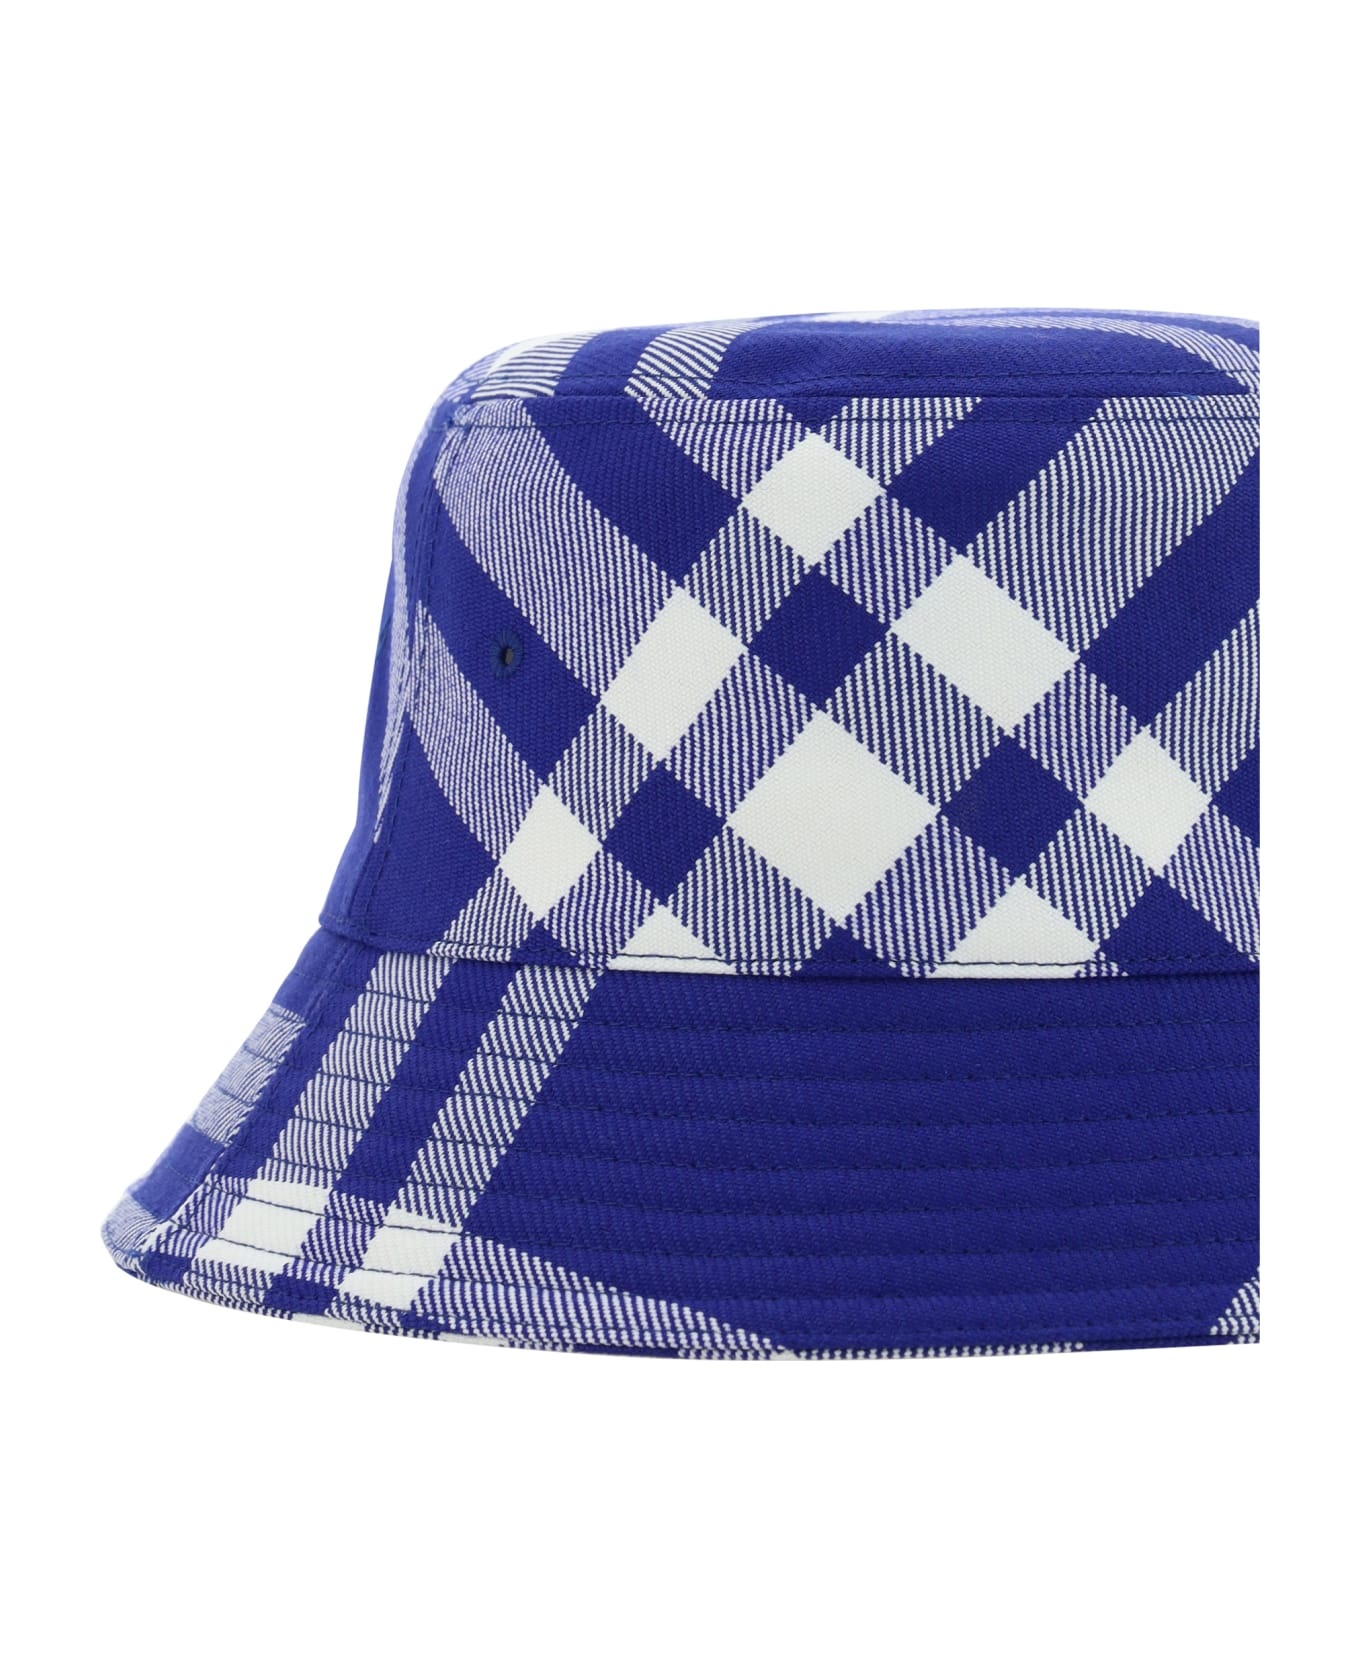 Wool Bucket Hat - 3